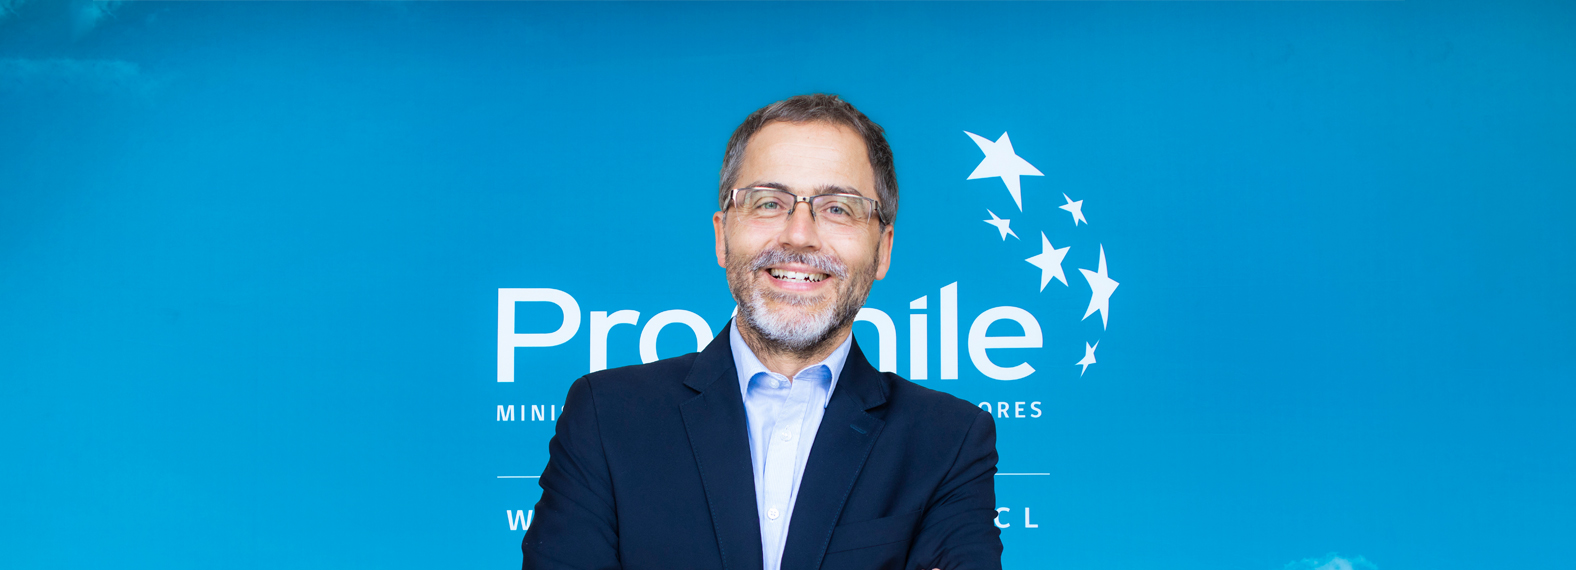 Ignacio Fernández Director General ProChile